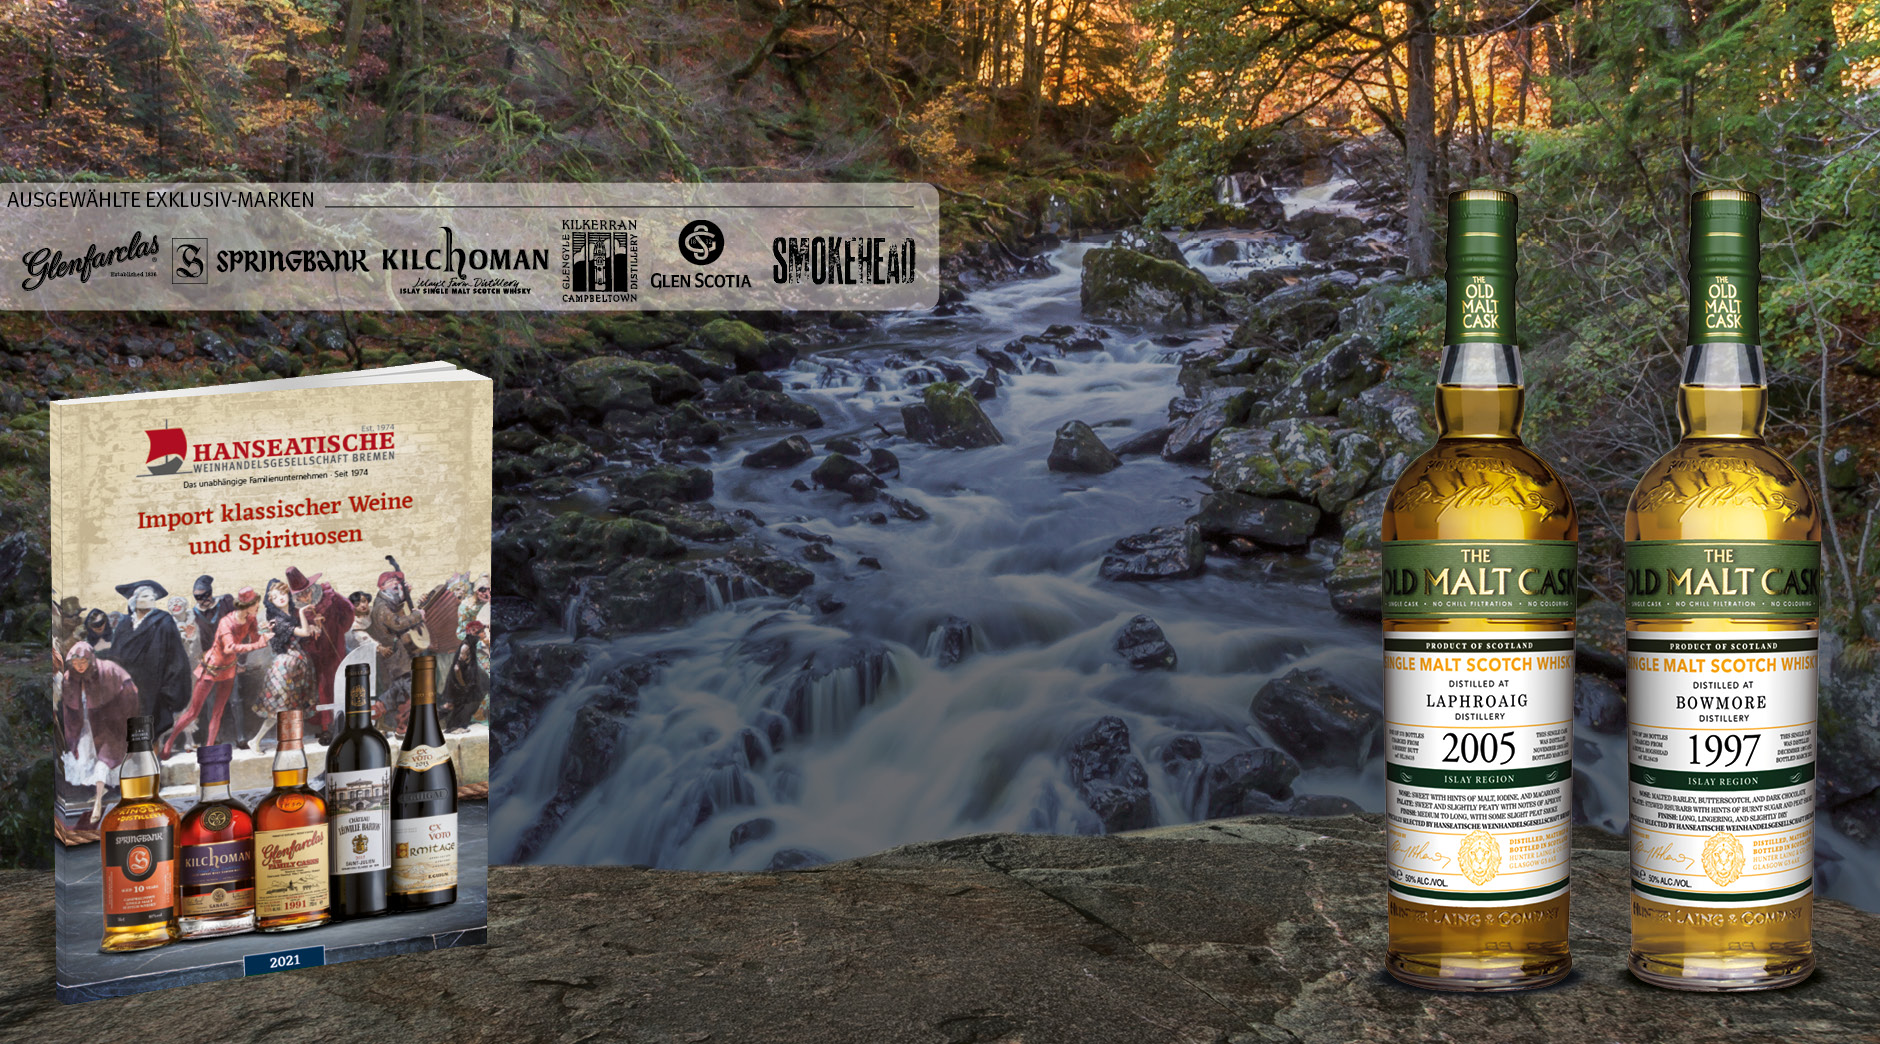 HAWE Katalog vor einem Wasserfall mit zwei Whiskyflaschen Laphroaig 2005 und Bowmore 1997